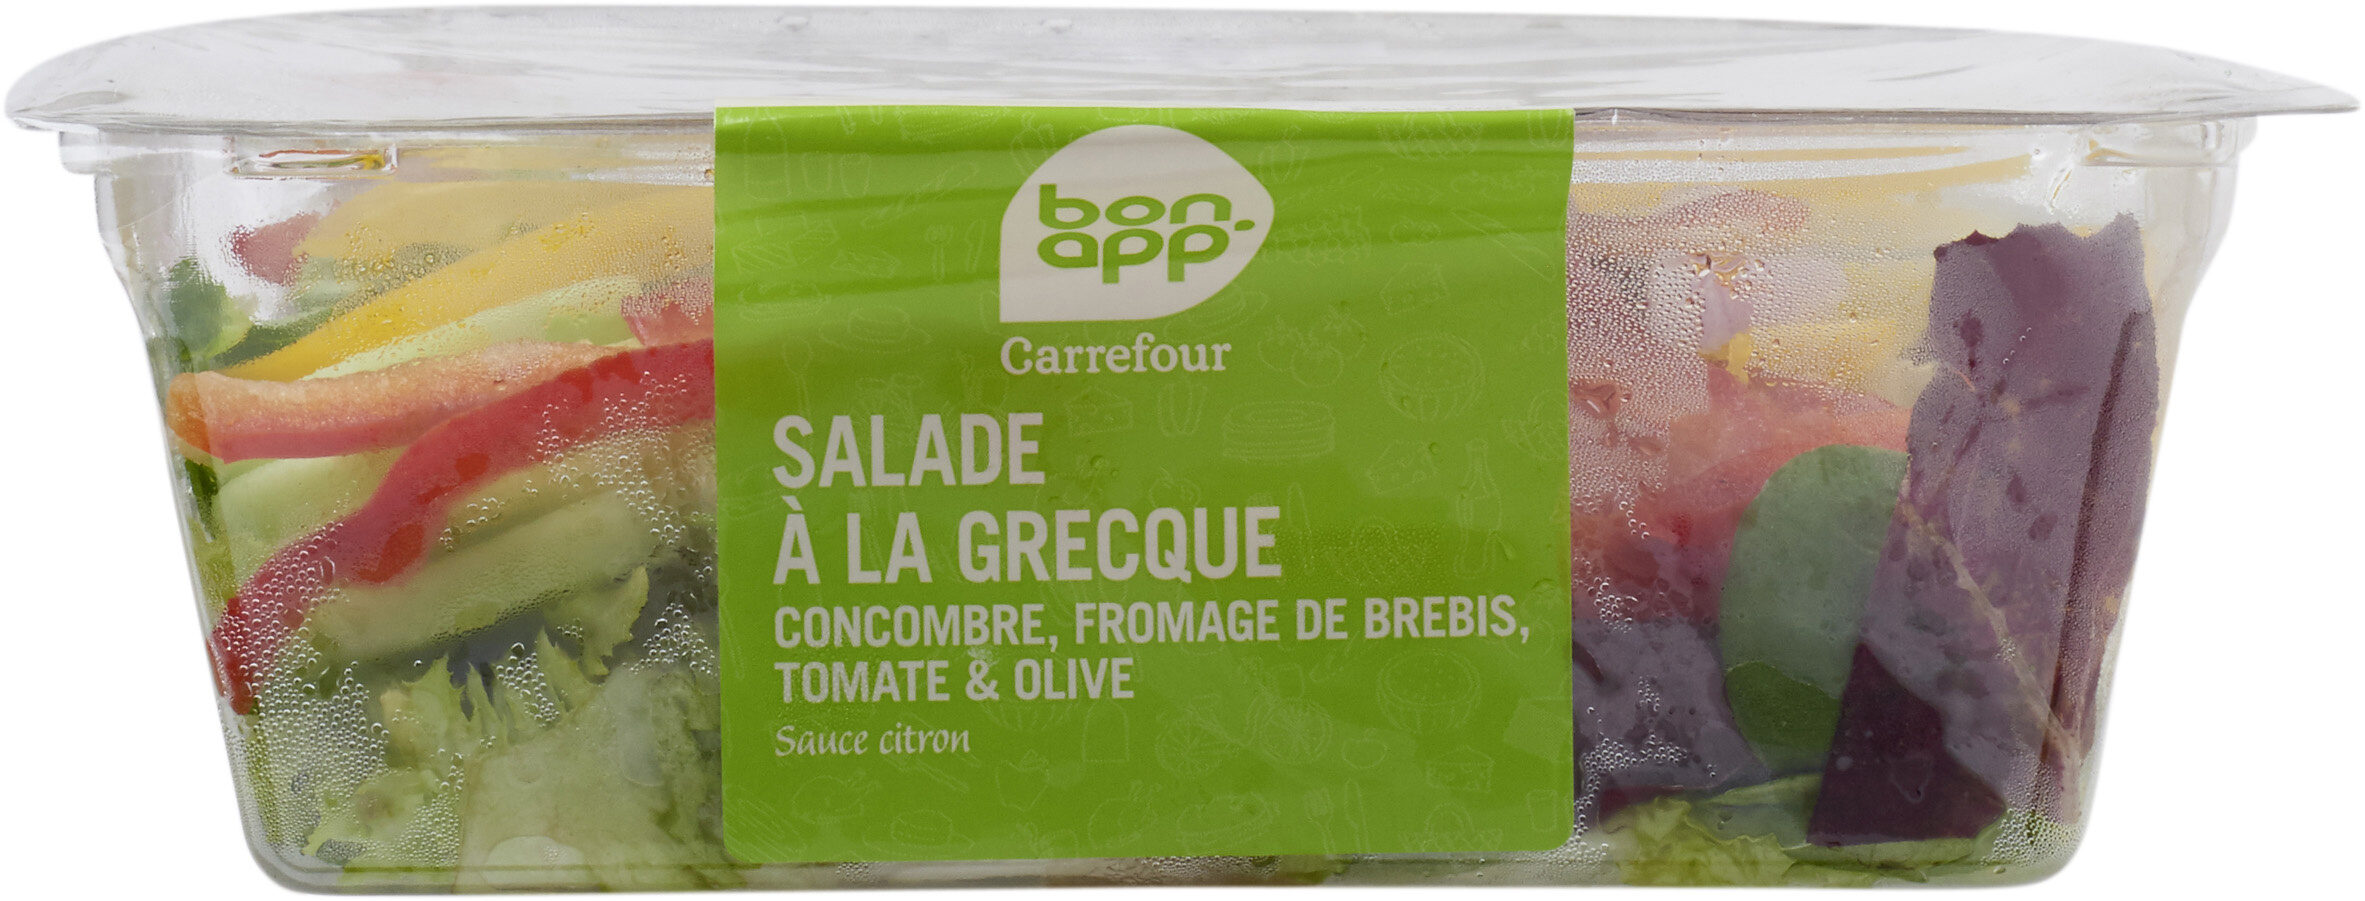 Salade à la grecque - Product - fr